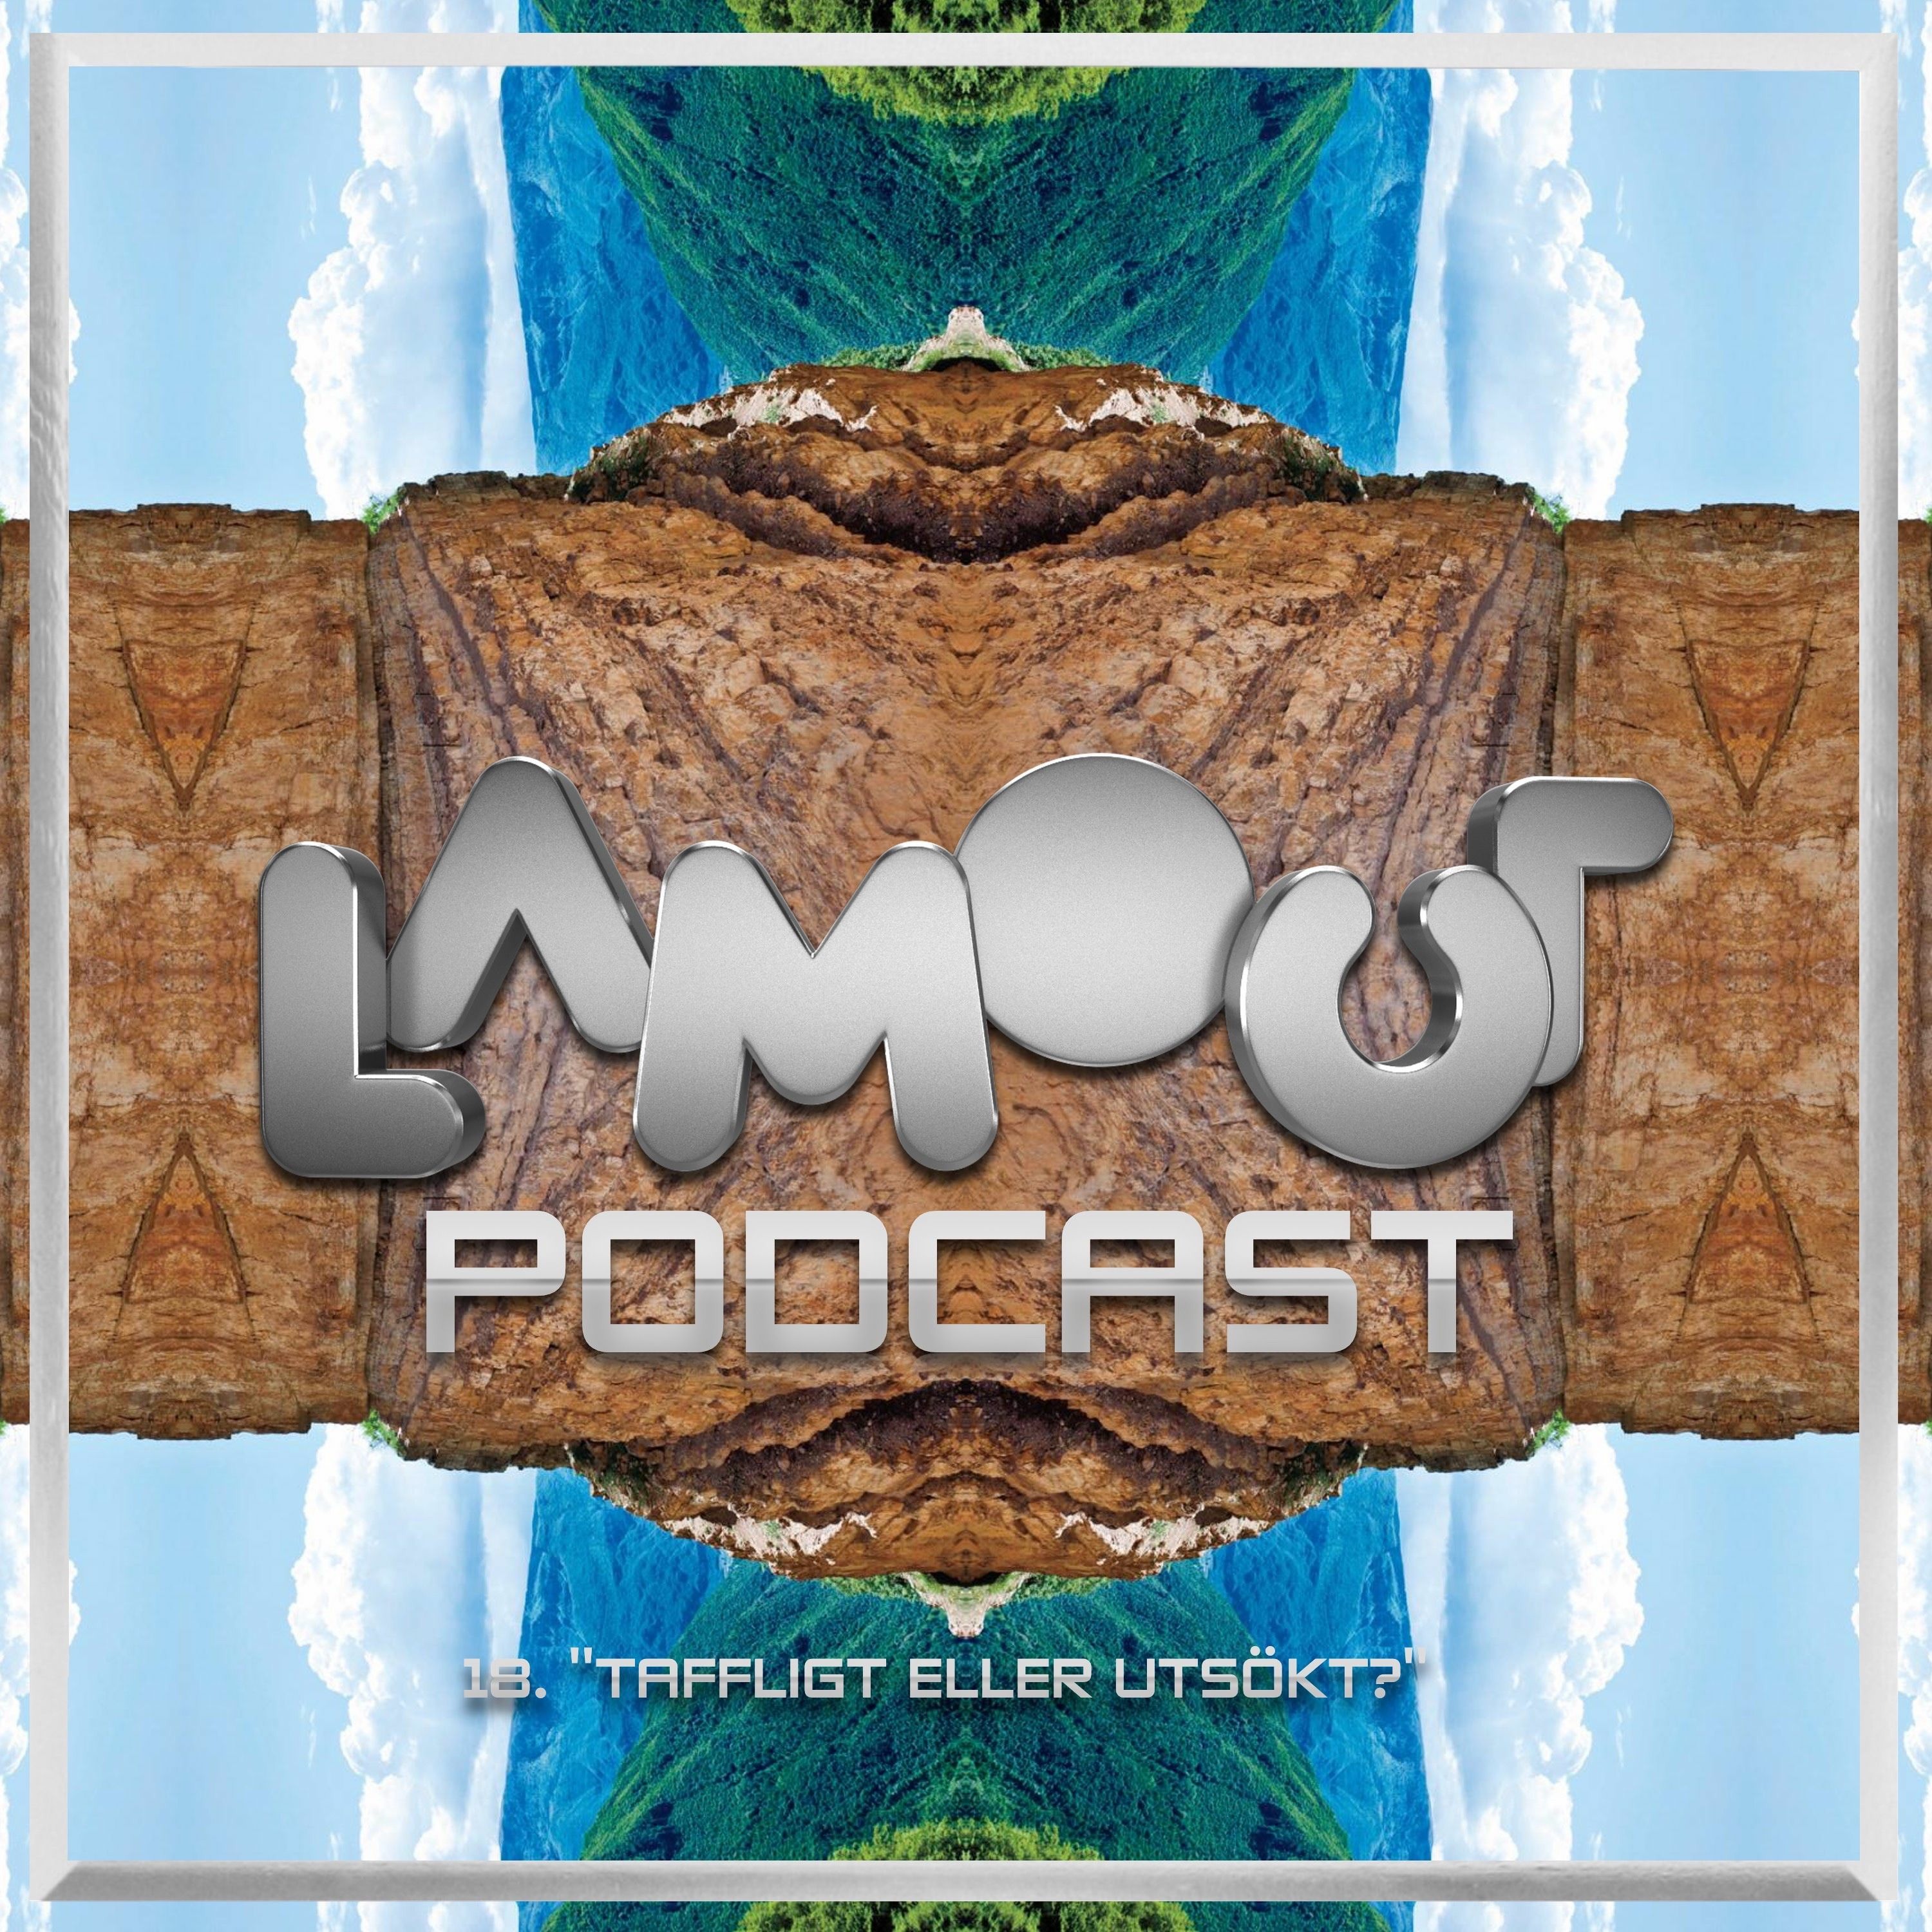 Lamour Podcast #17 - Taffligt eller utsökt?